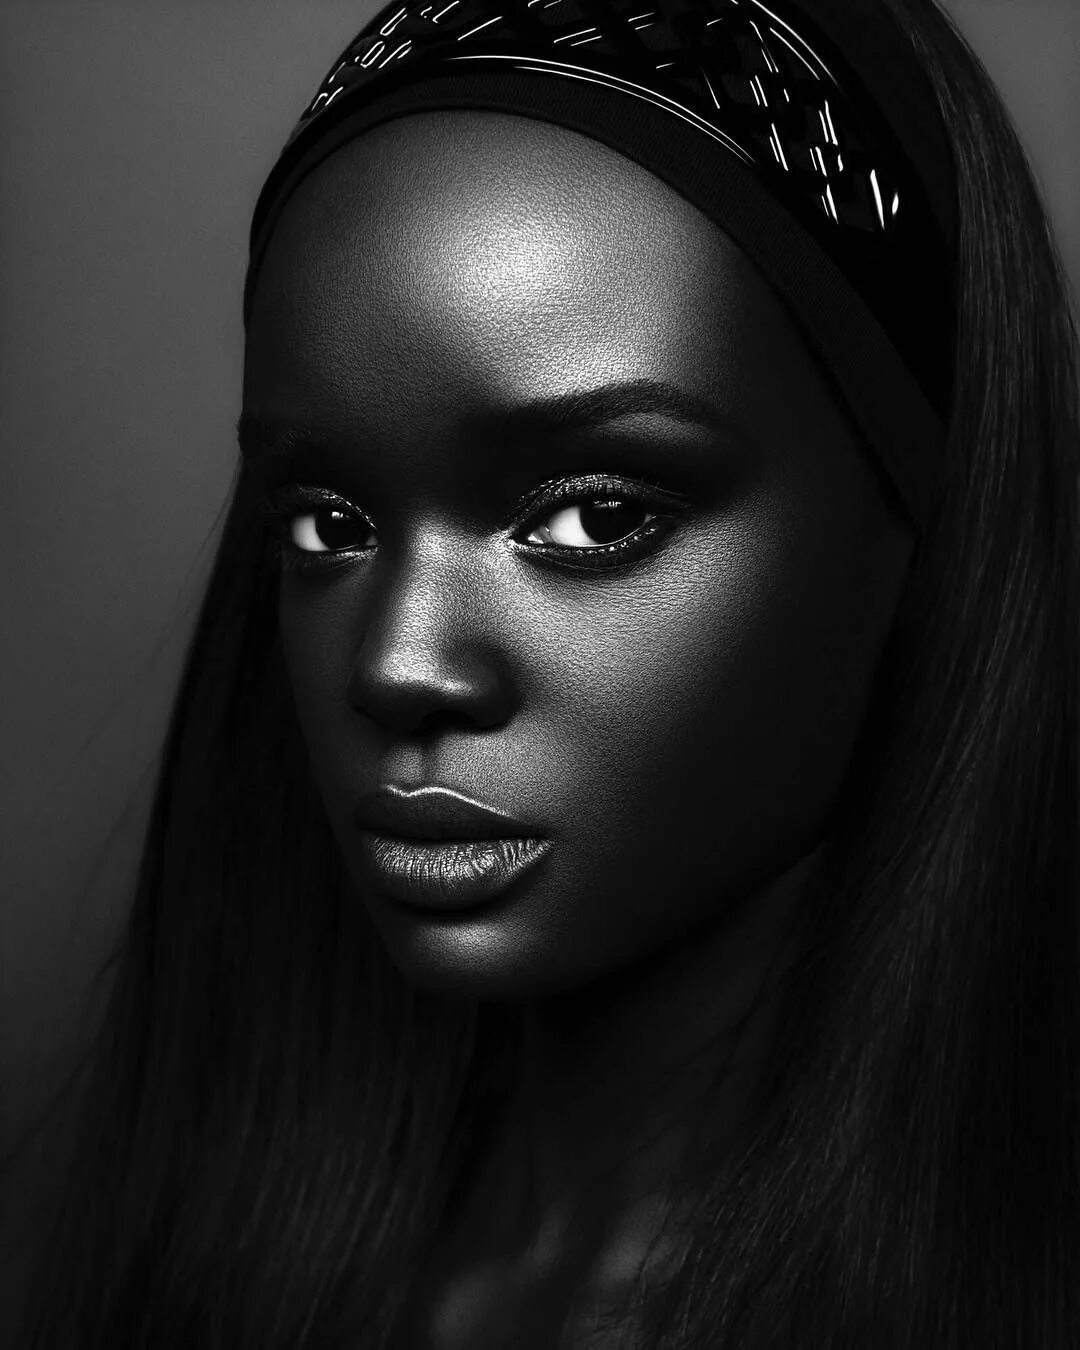 Модель даки тот (Duckie thot) из Южного Судана. Брук Бейли темнокожая модель. Пегги Даниэль темнокожая модель. Чернокожая дама